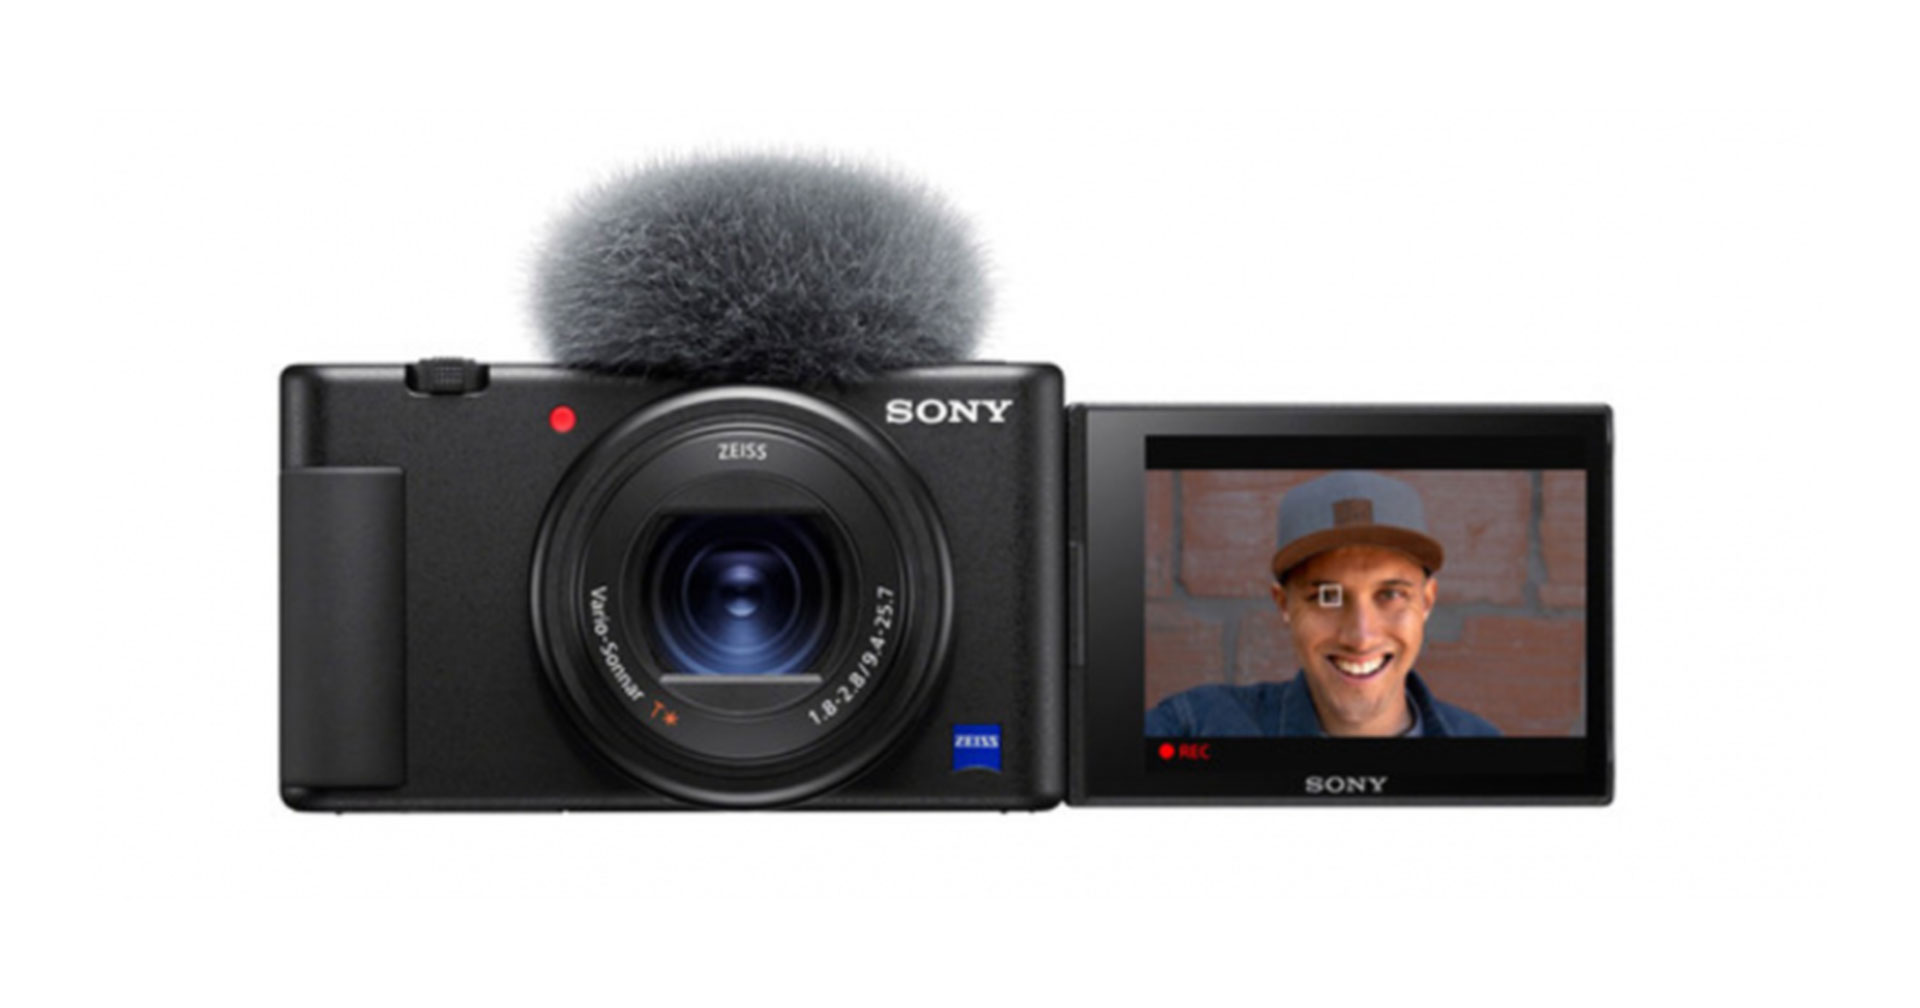 ยืนยัน! กล้อง Sony APS-C E-Mount รุ่นใหม่ จะใช้ชื่อ ‘ZV-E10’